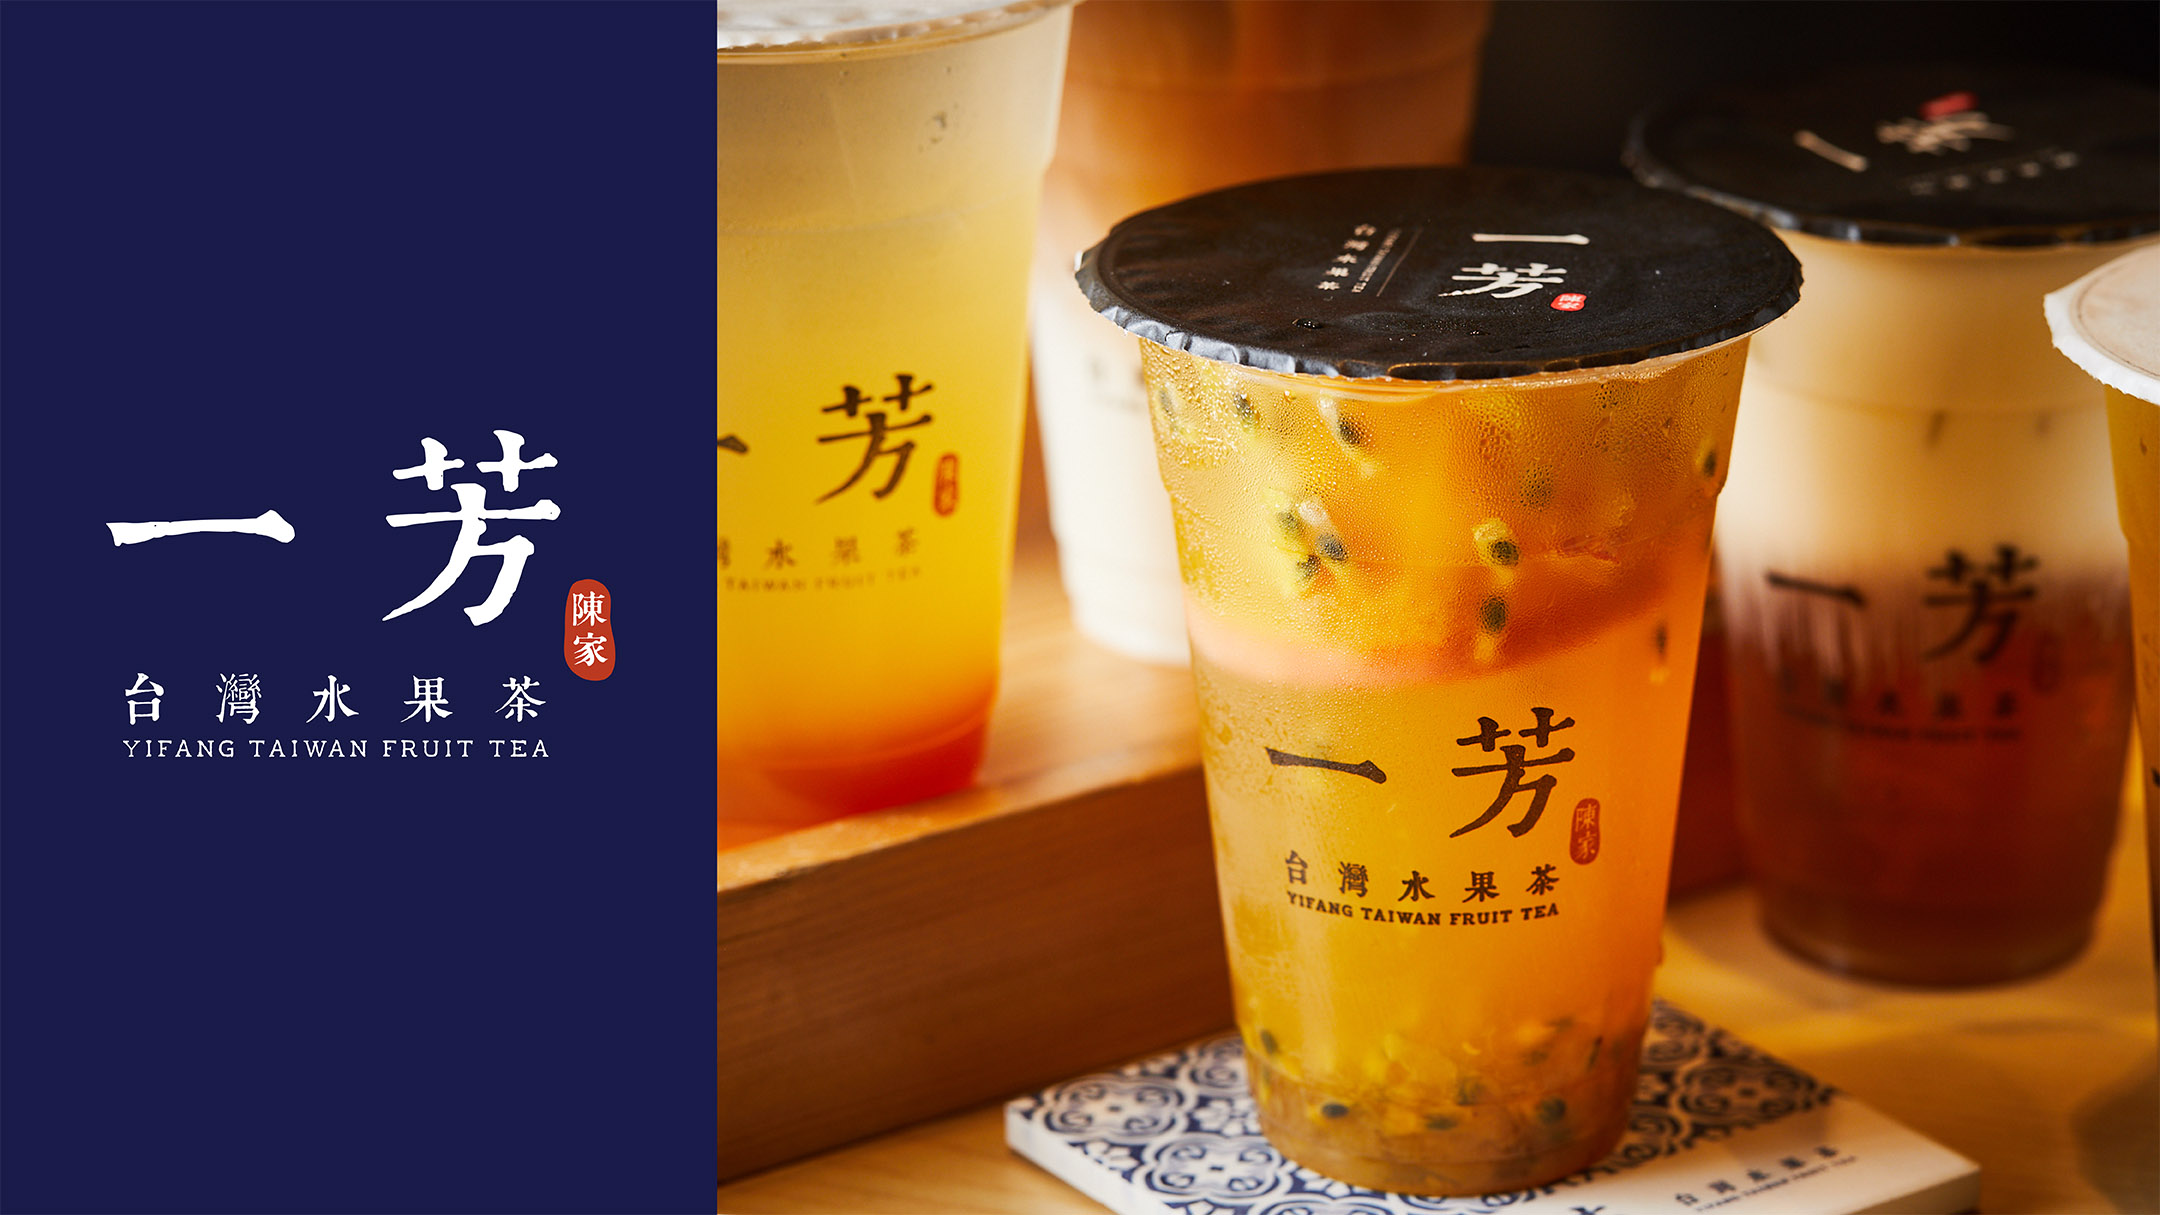 Yifang Taiwan Fruit Tea Offer